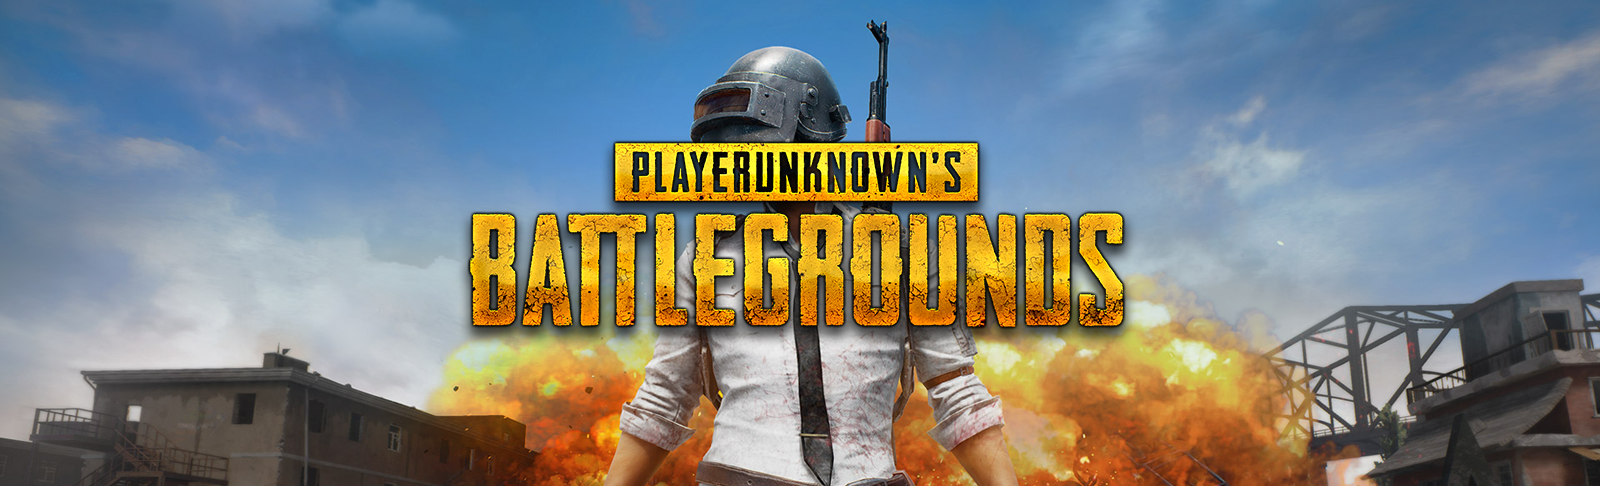 PlayerUnknown’s Battlegrounds -joukkue julki